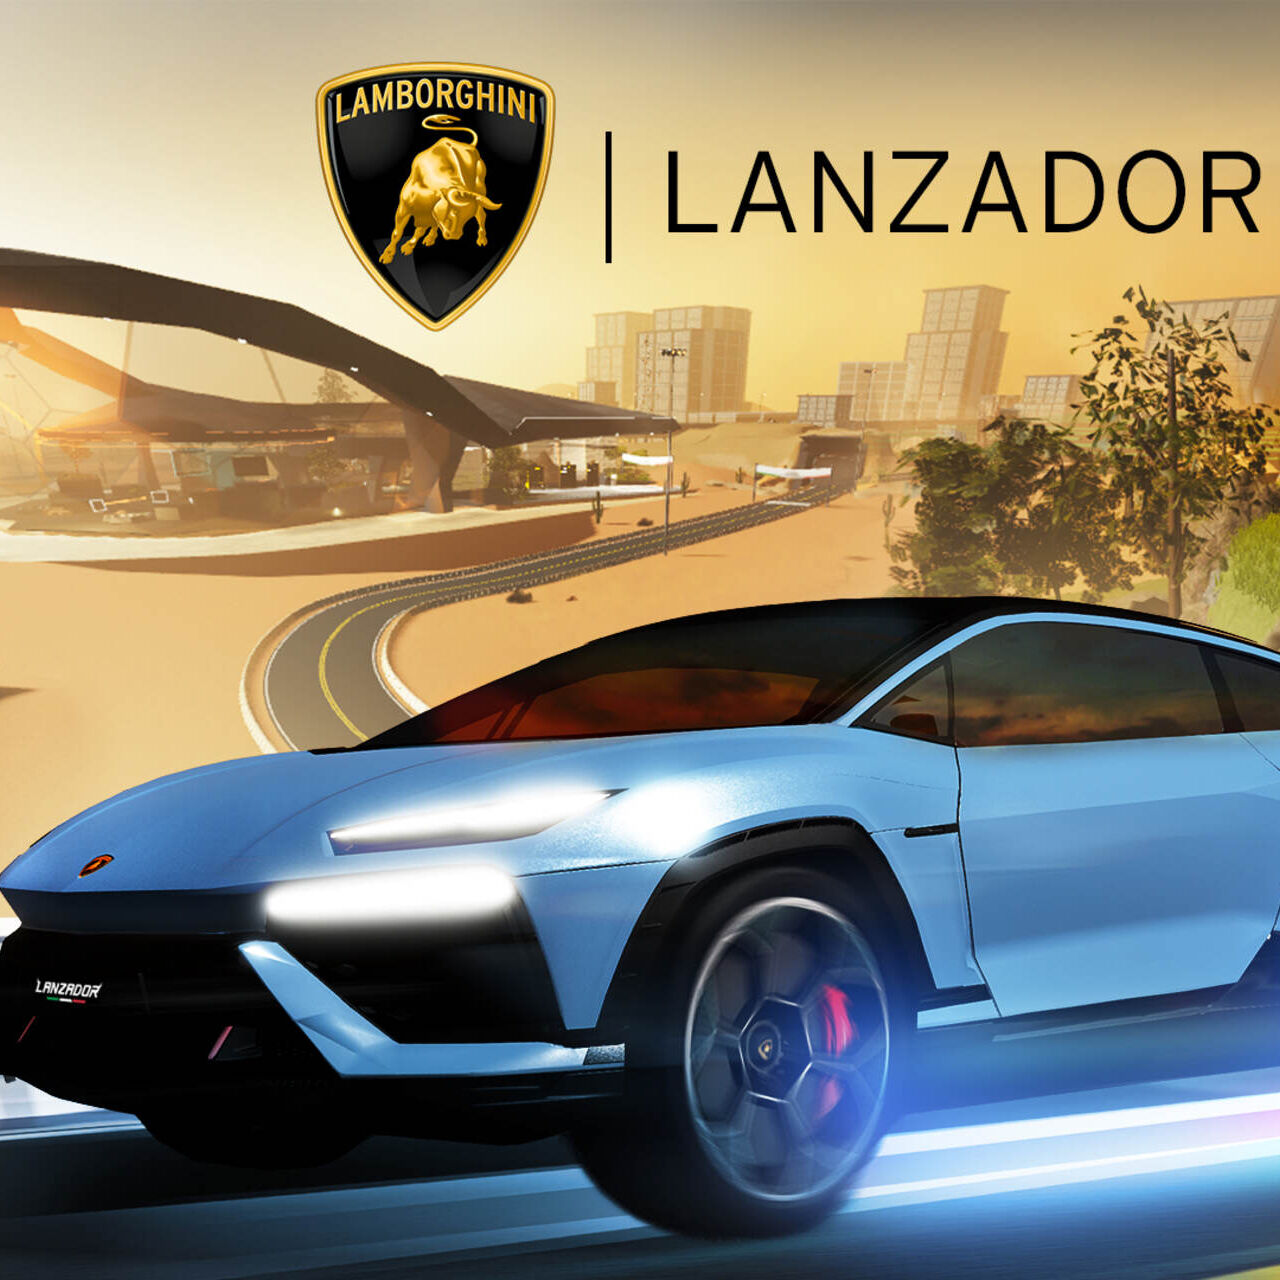 Lanzador：蘭博基尼汽車公司的電動超級跑車在 3D 沉浸式平台 Roblox 上推出